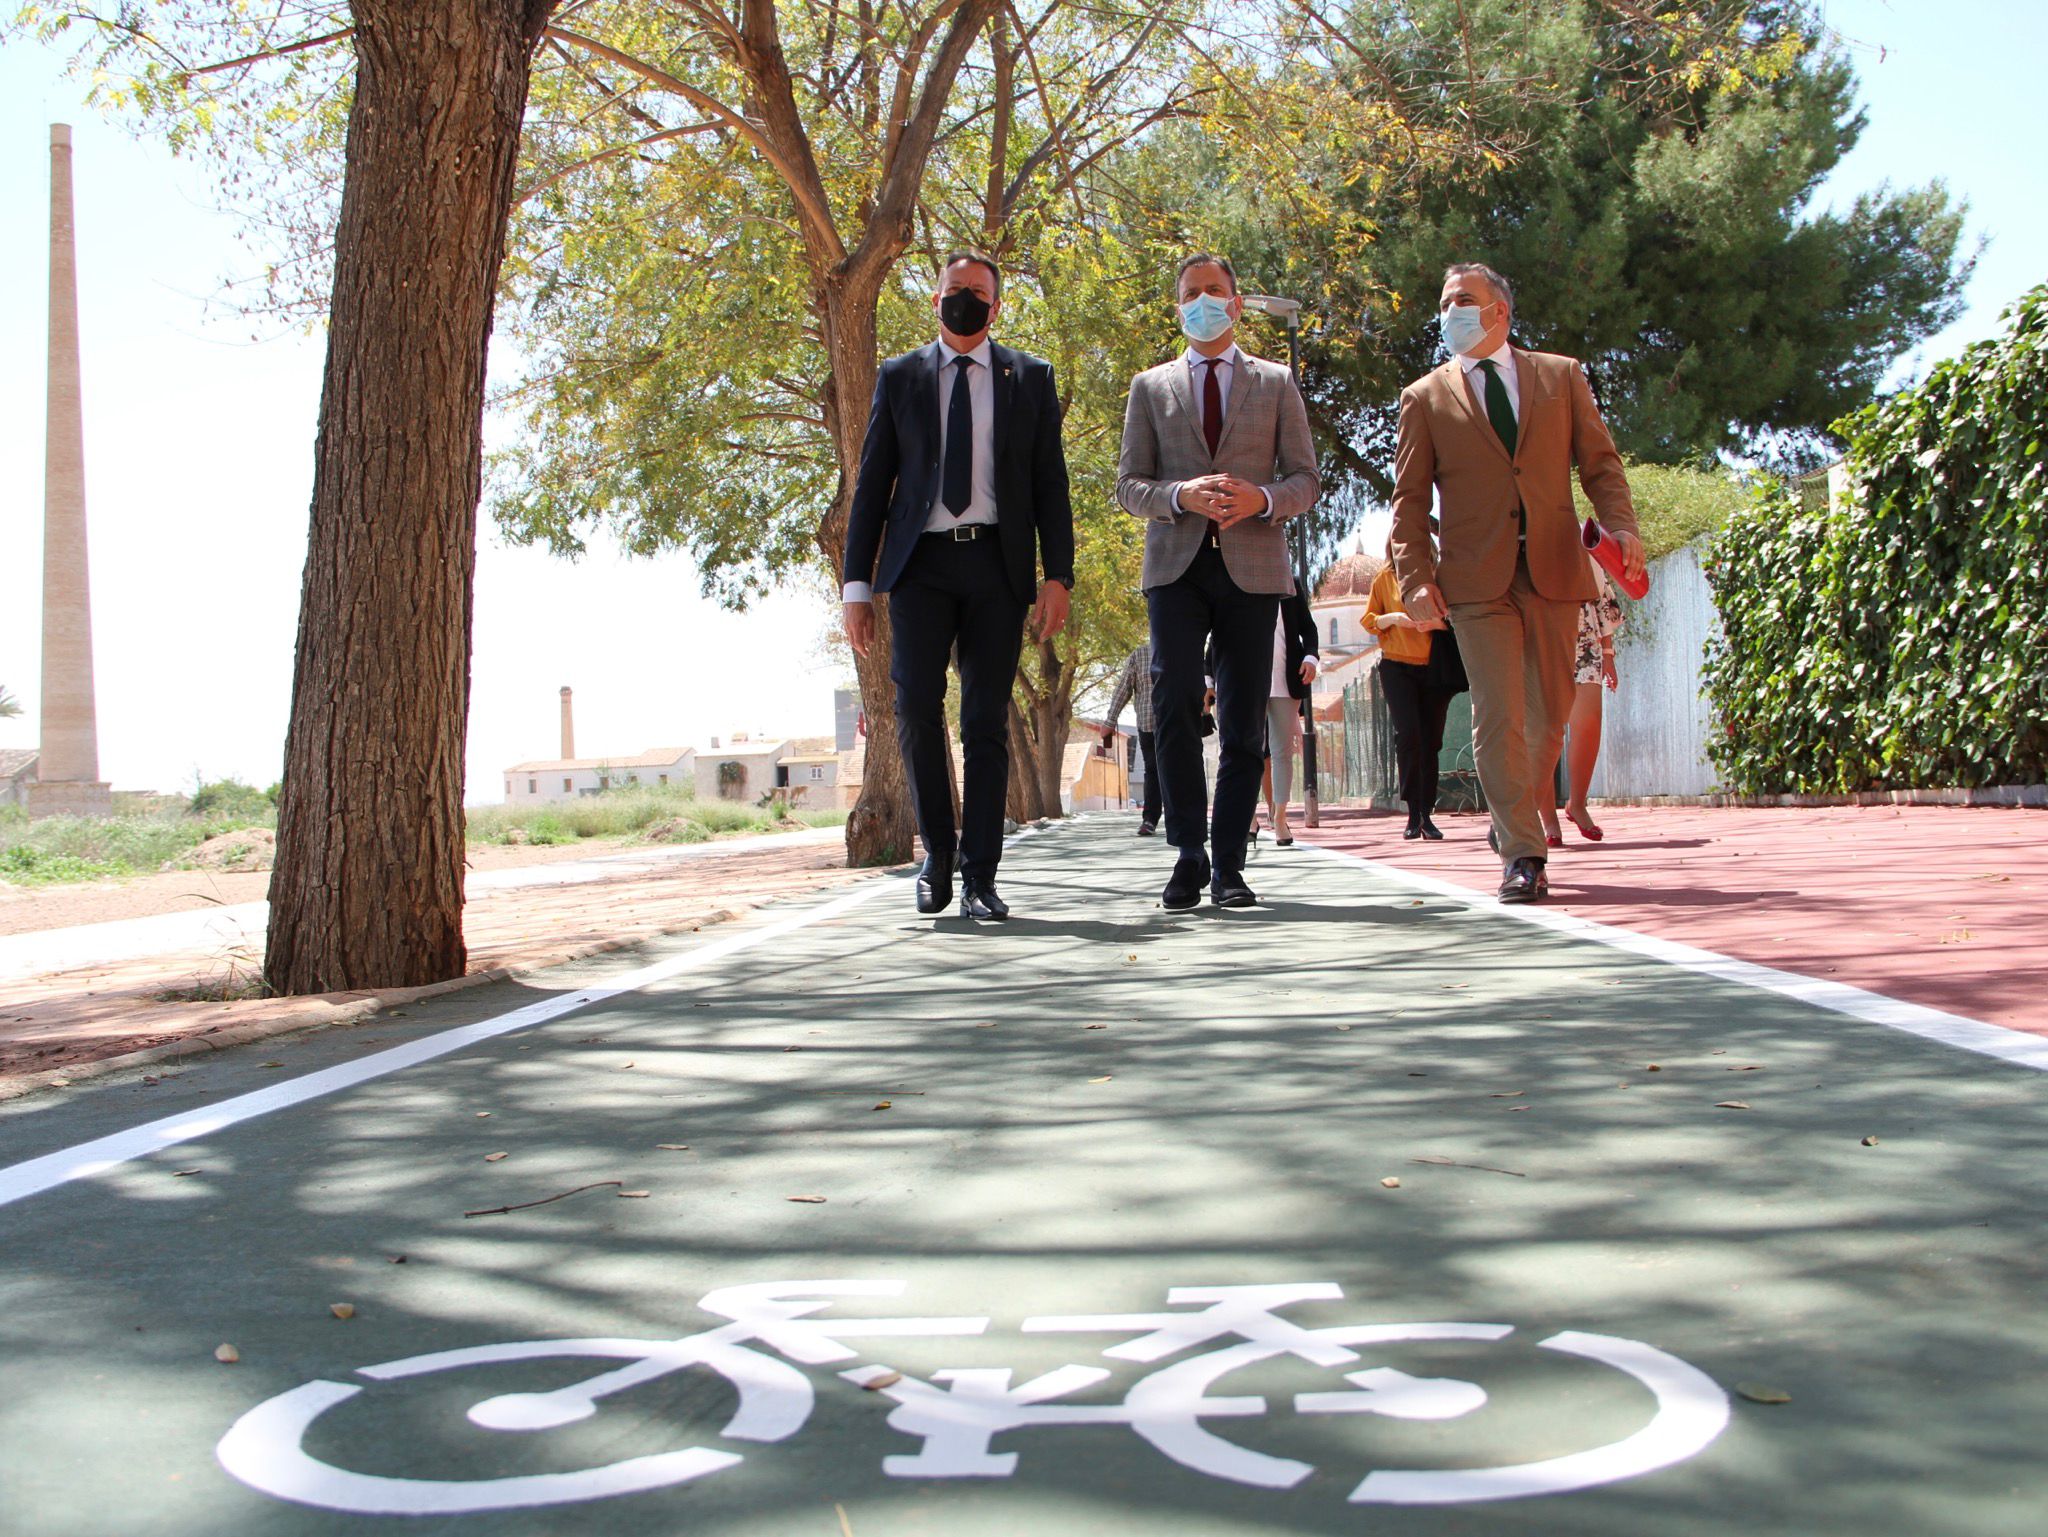 El consejero de Presidencia, Turismo y Deportes, junto con el alcalde de Ceutí y el director general de Administración Local, recorriendo el carril bici cuyo pavimento ha sido reemplazado